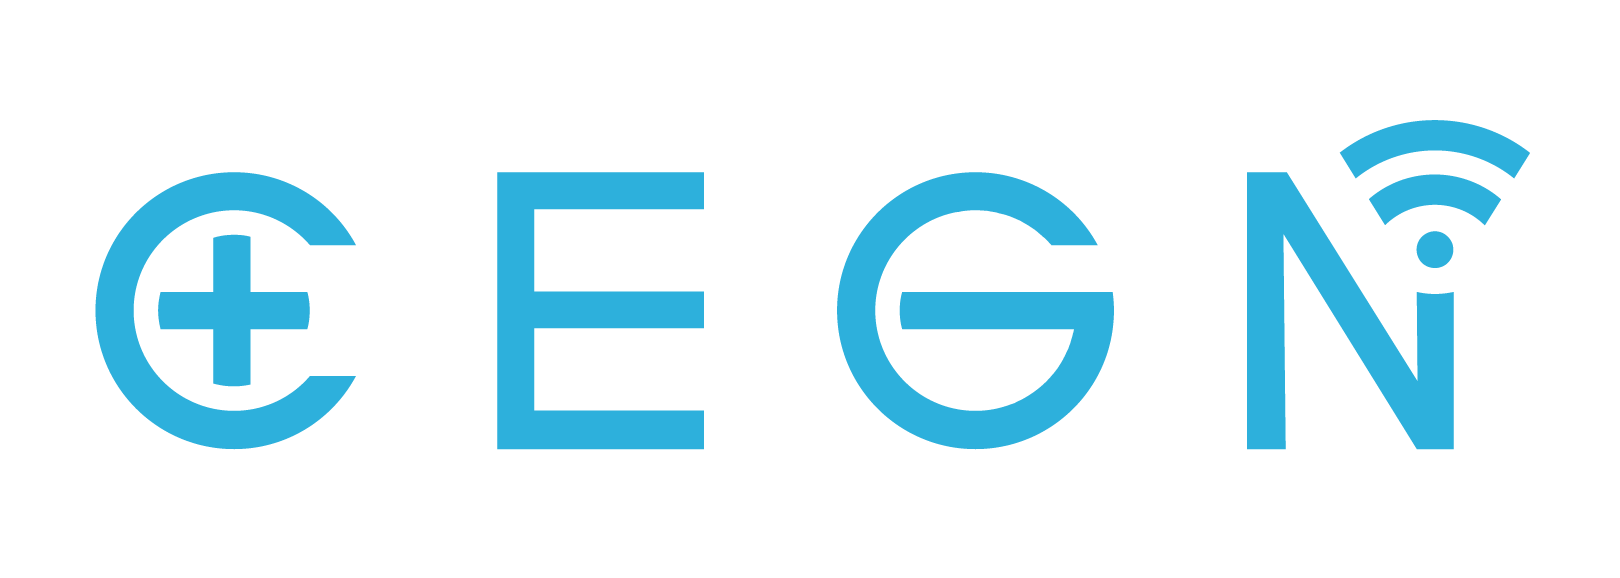 CENG_logo_vector